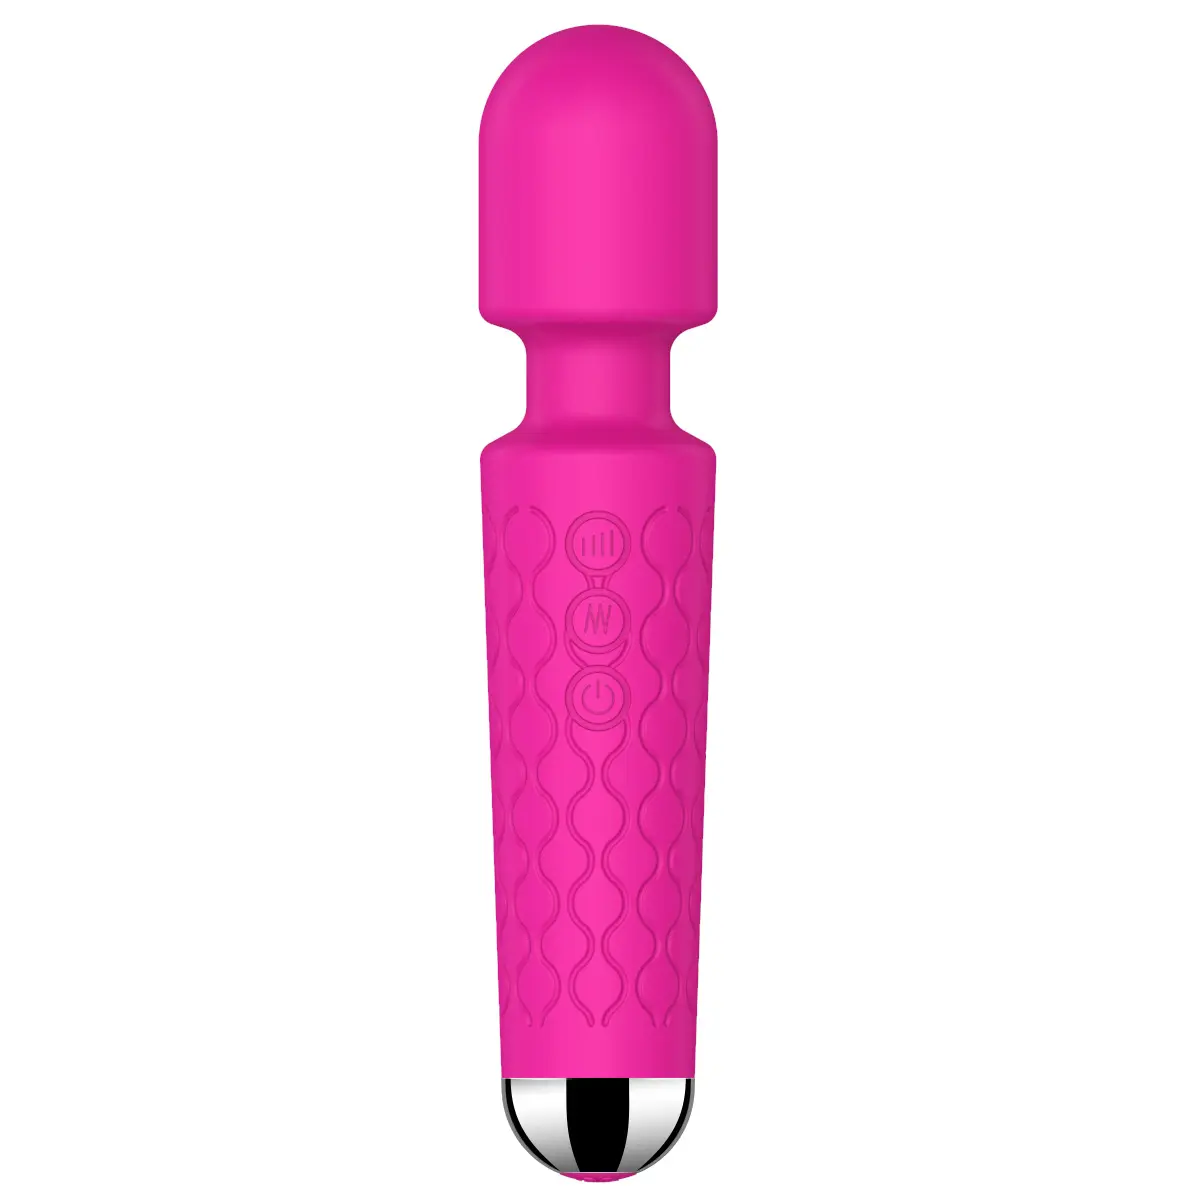 Venta caliente 20 vibración sexo coño caliente vagin juguete sexo vibración juguetes sexuales consoladores para hombres vibración Tanga para mujer